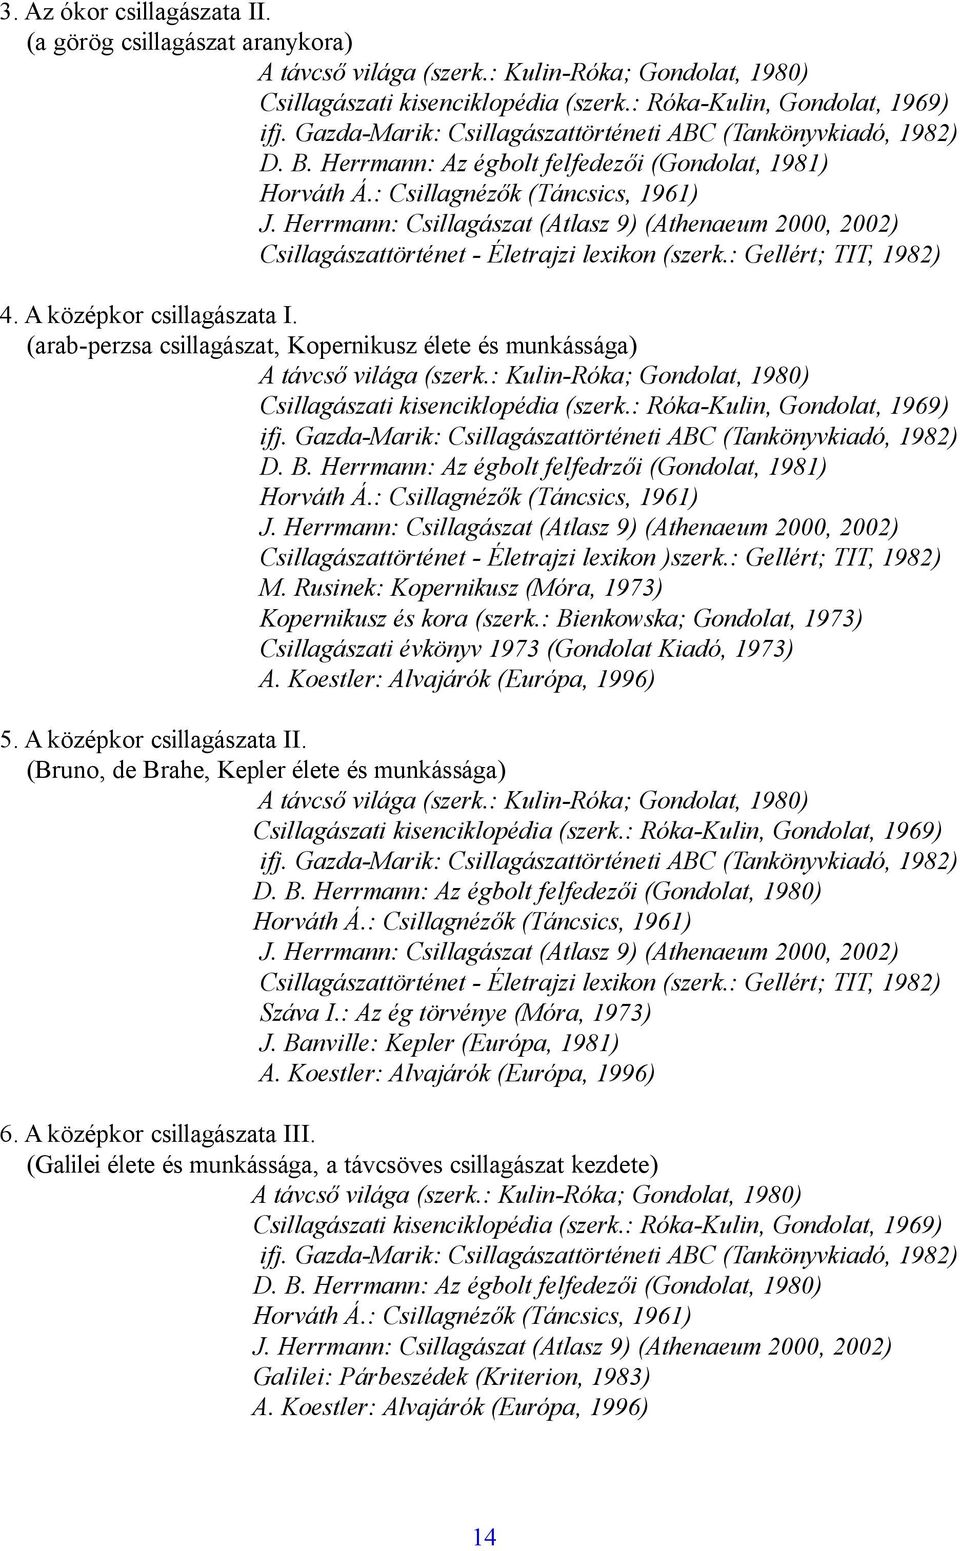 (arab-perzsa csillagászat, Kopernikusz élete és munkássága) Csillagászati kisenciklopédia (szerk.: Róka-Kulin, Gondolat, 1969) D. B. Herrmann: Az égbolt felfedrzői (Gondolat, 1981) Horváth Á.